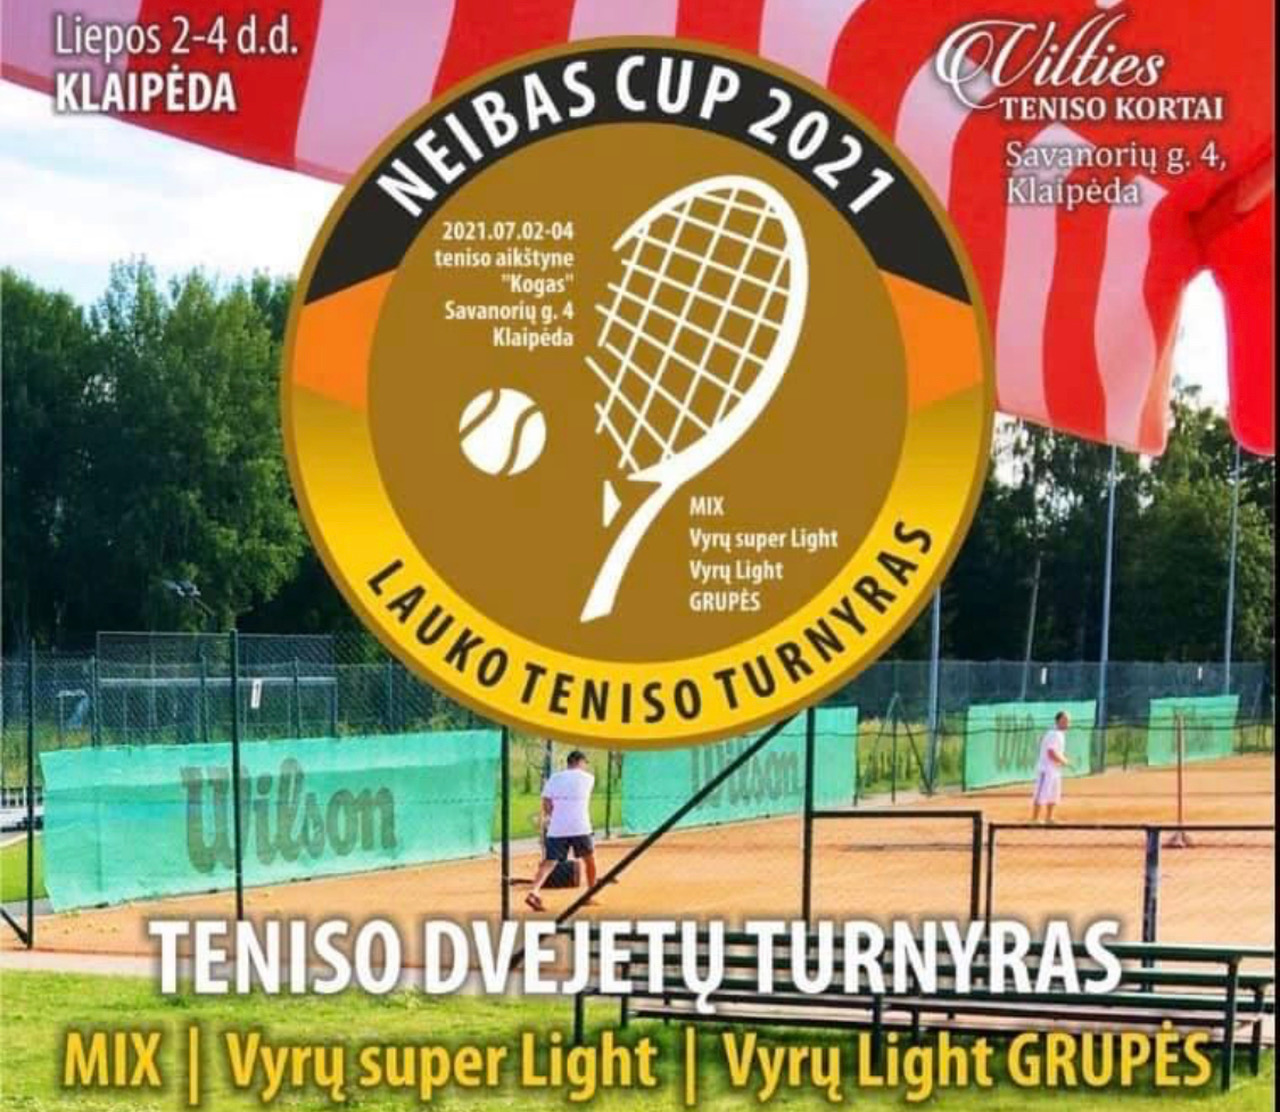 Teniso dvejetų turnyras NEIBAS CUP 2021 taurei laimėti